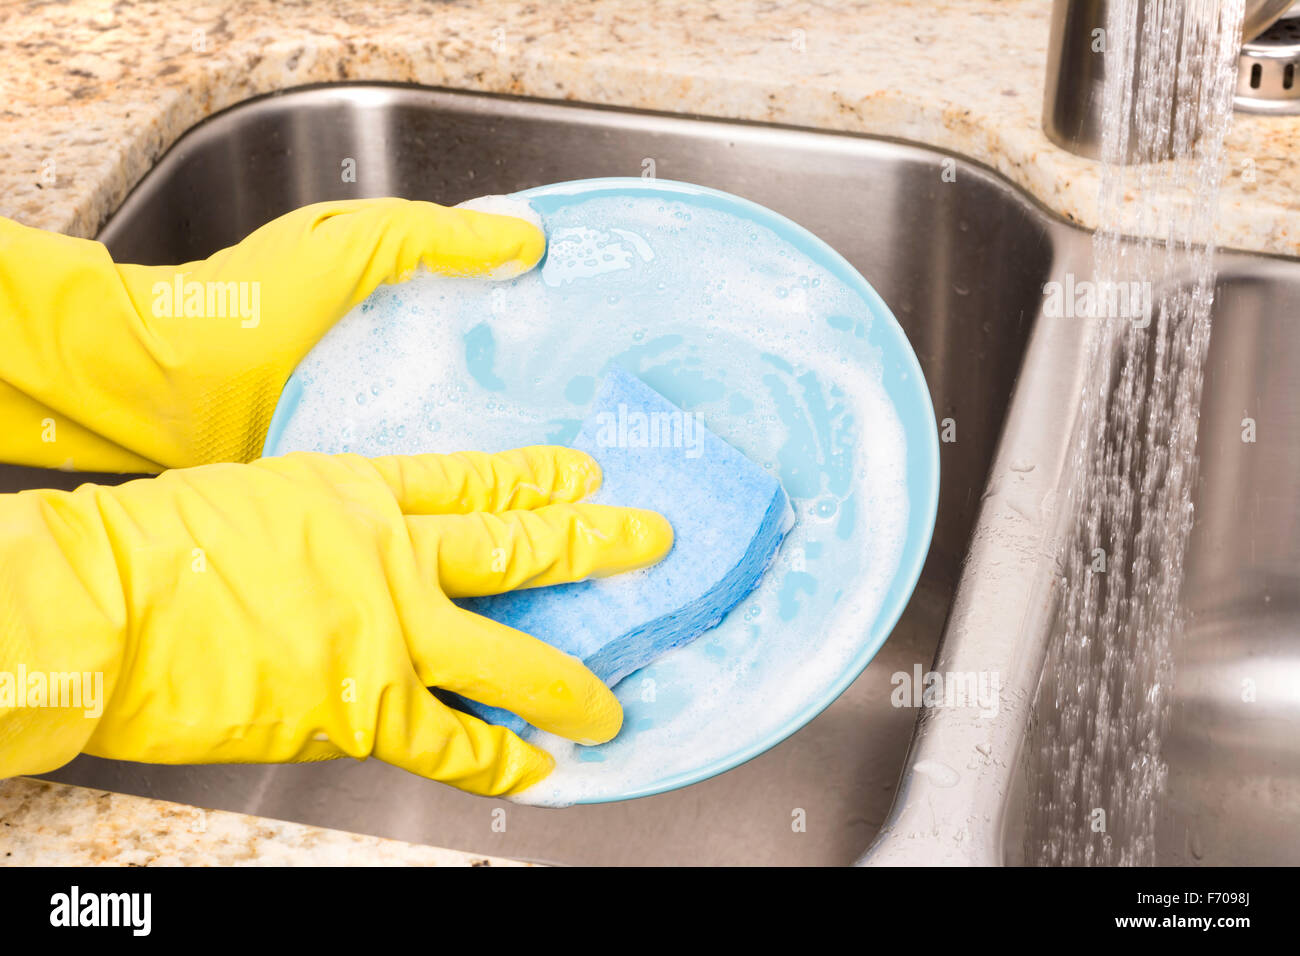 Guanti per lavare i piatti utensili per la pulizia dei guanti